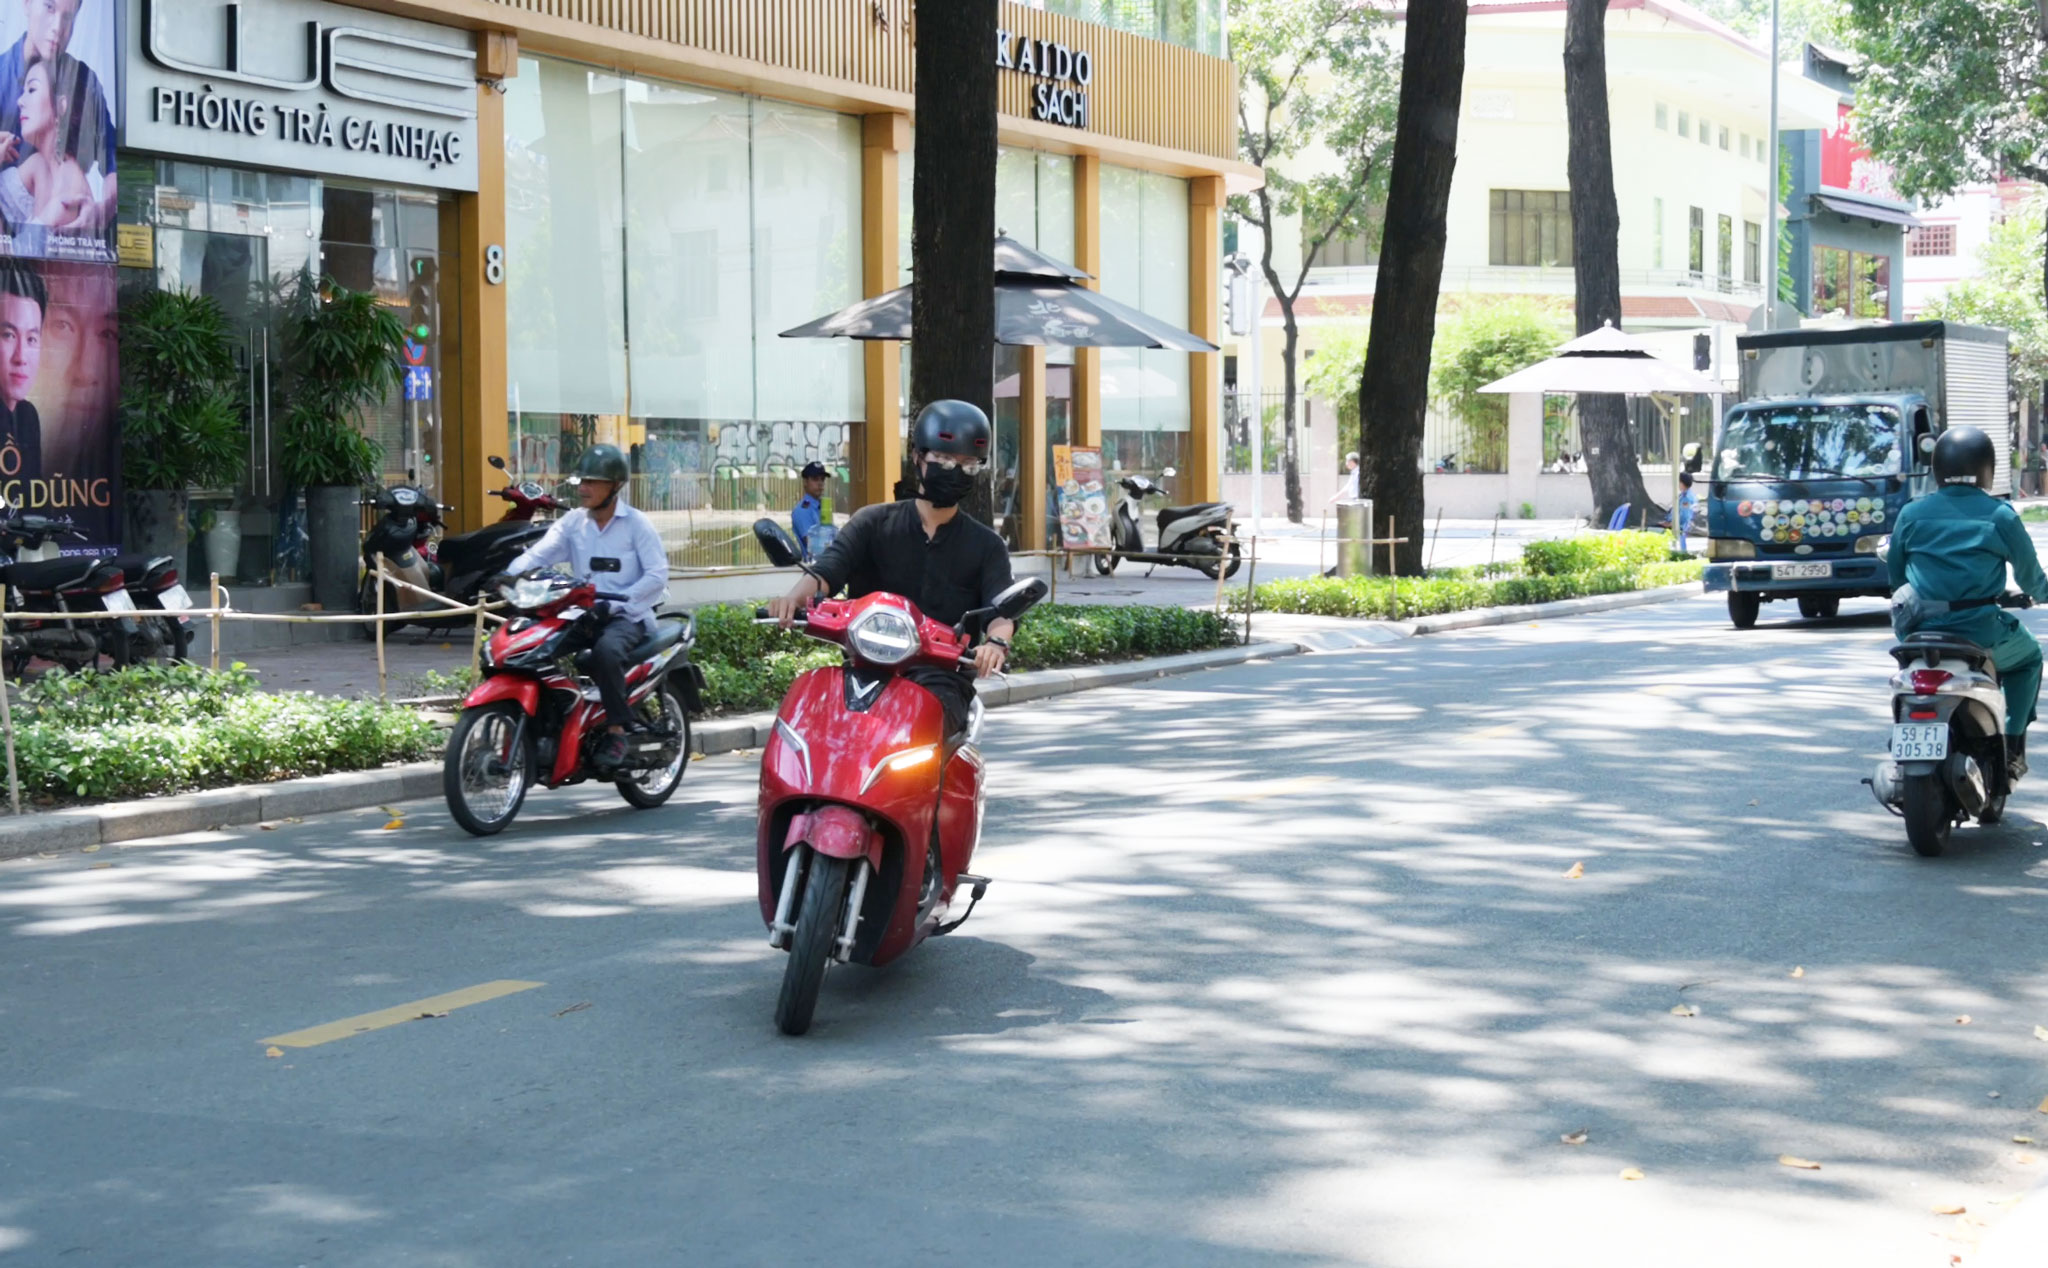 [Chia sẻ] Chạy xe máy băng qua đường thế nào cho an toàn?